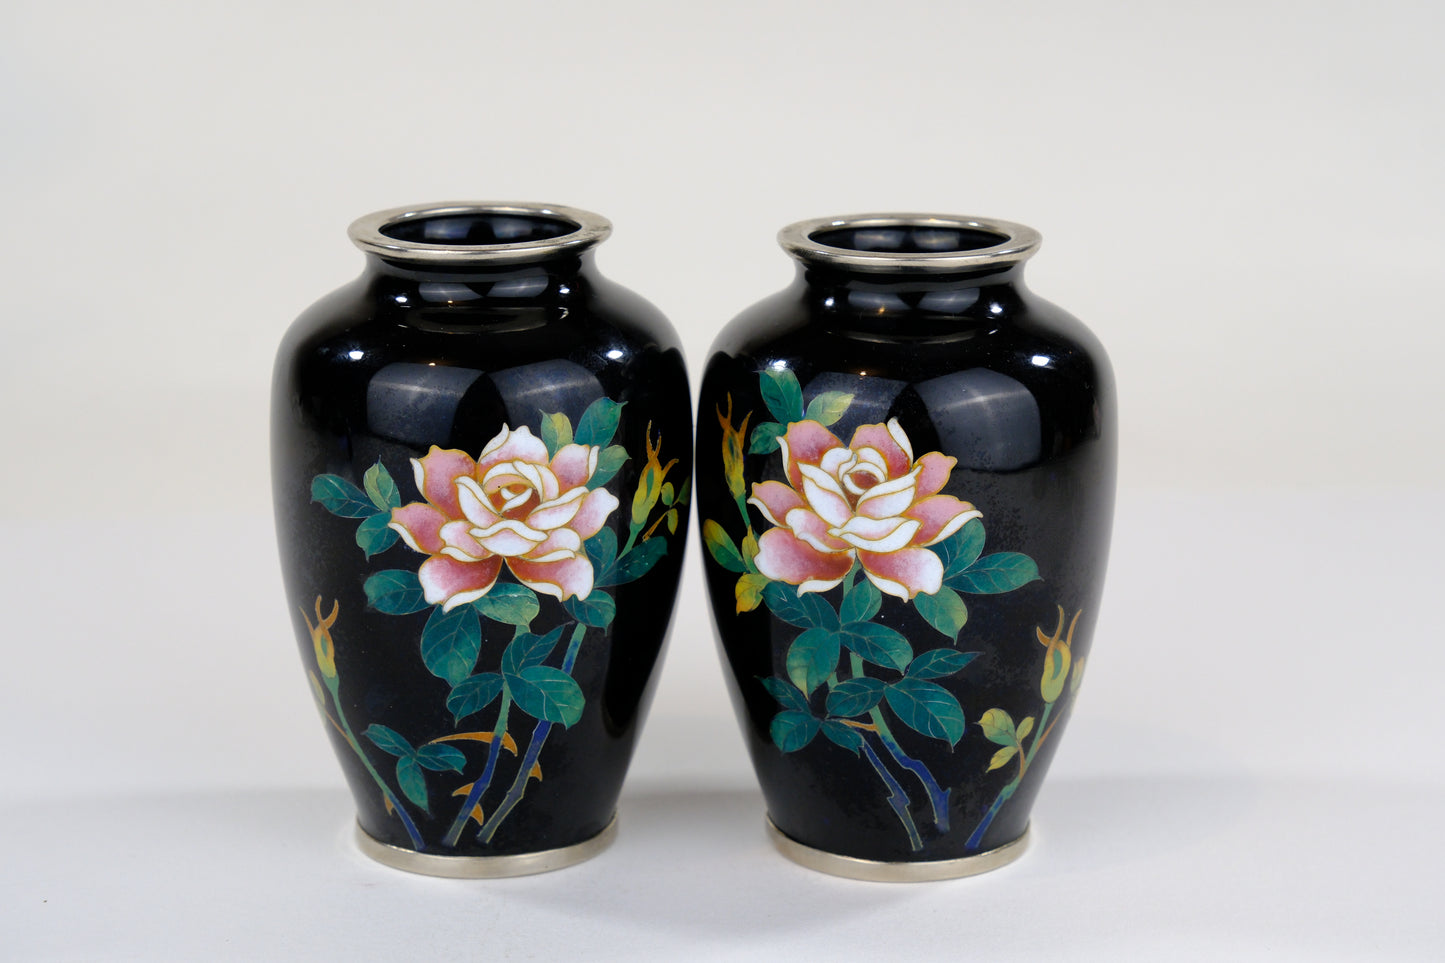 Antique Japanese Meiji Era (c1880) Cloisonné Vases x2 PAIR Pink Roses Black   3.5”